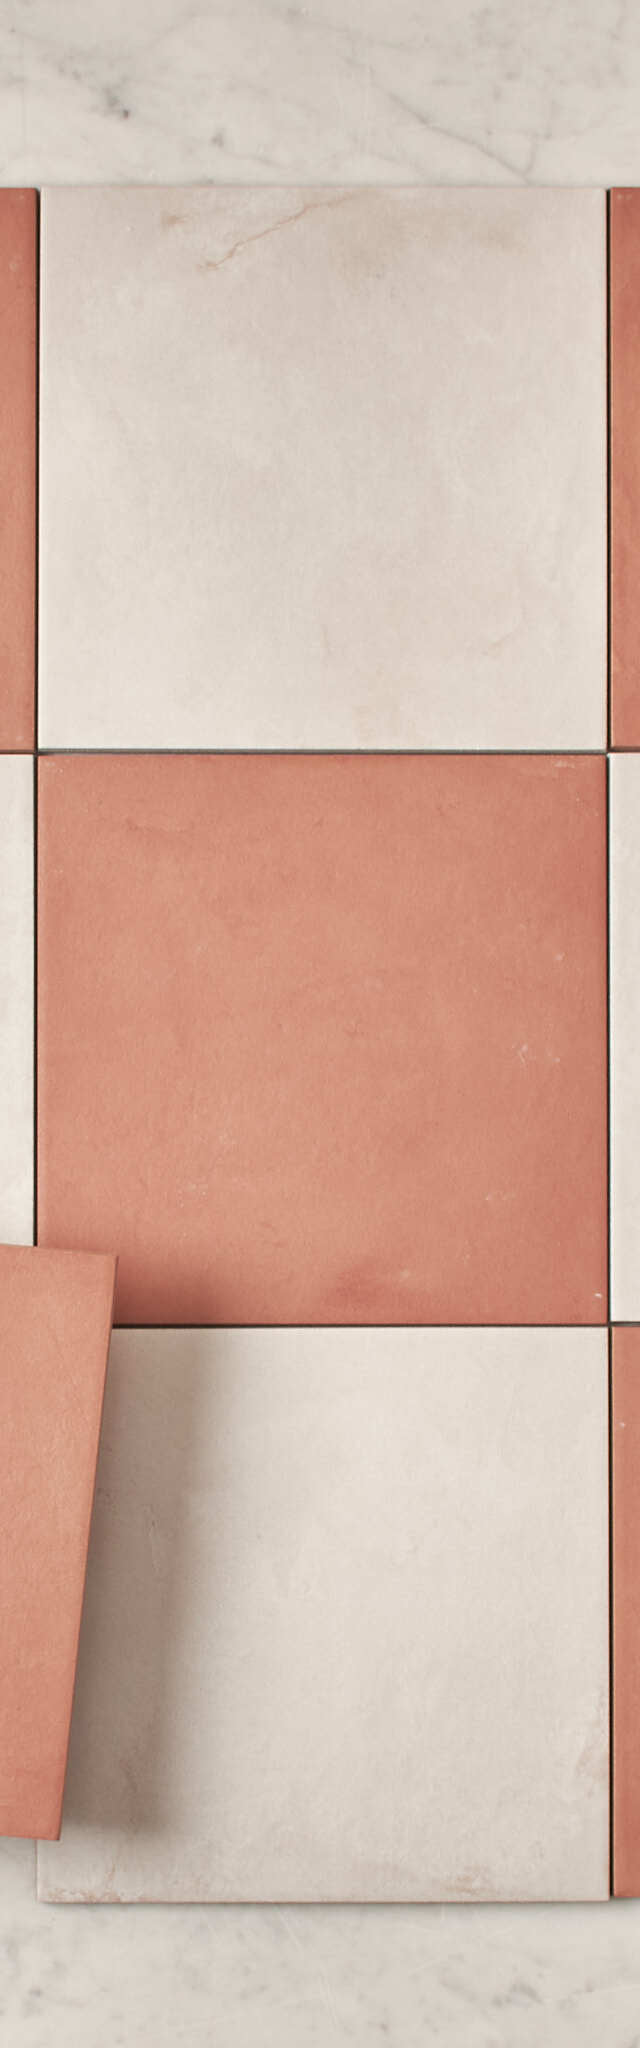 Fina Ceramics TILE Bronte Checkerboard Terracotta & White Tile